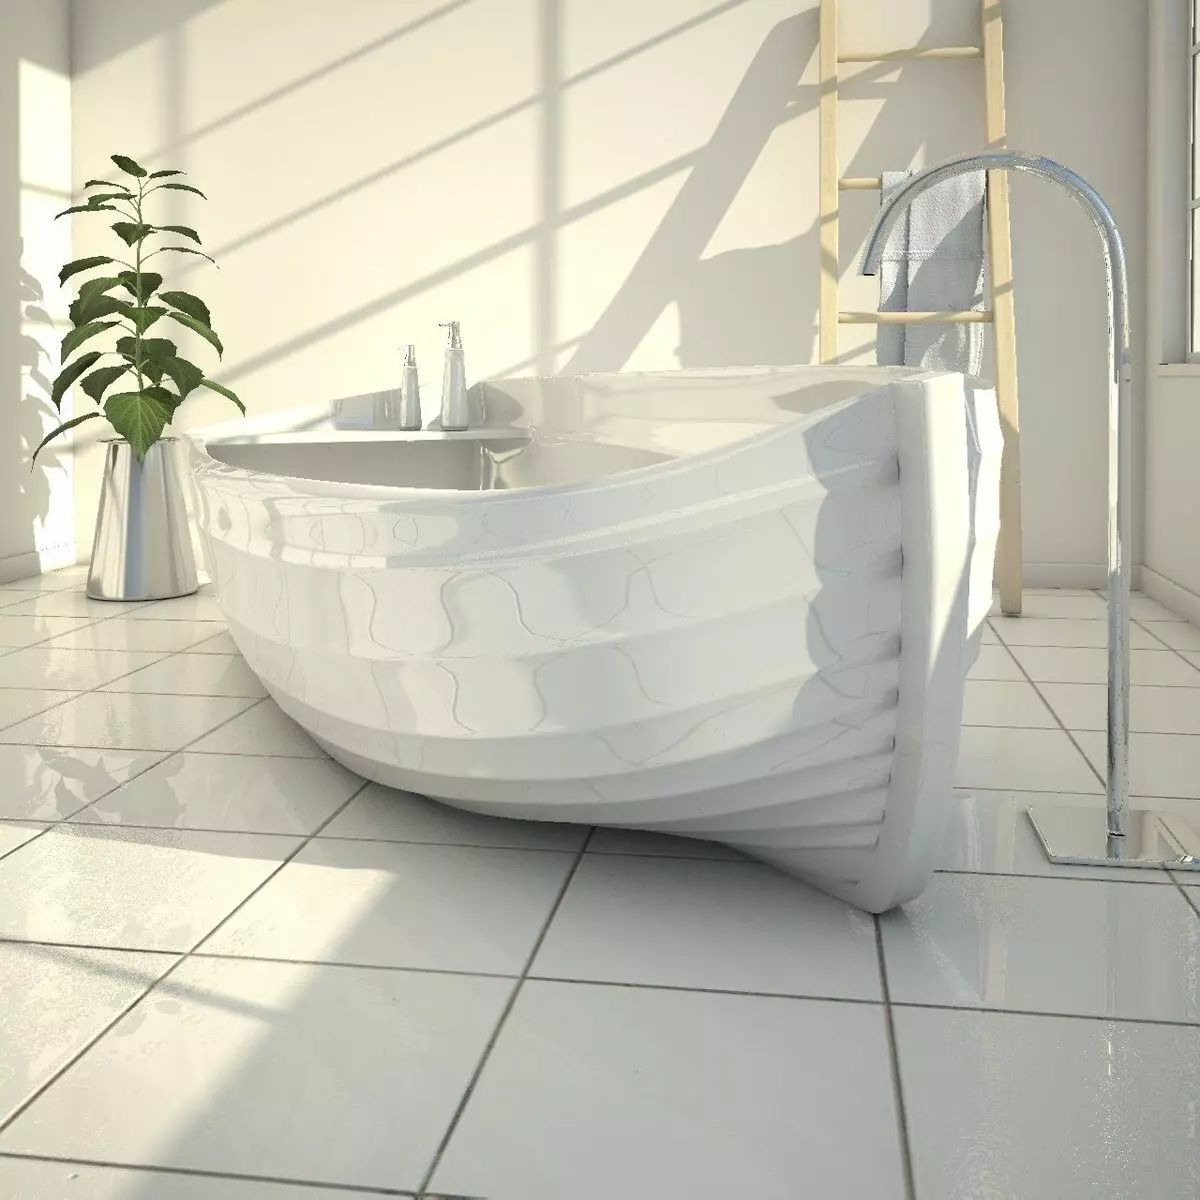 Phòng tắm (97 ảnh): Chọn tốt hơn là gì? Hẹp và rộng, màu và trắng, tắm 120x70, 140x70 cm và các kích cỡ khác, loại 10217_51